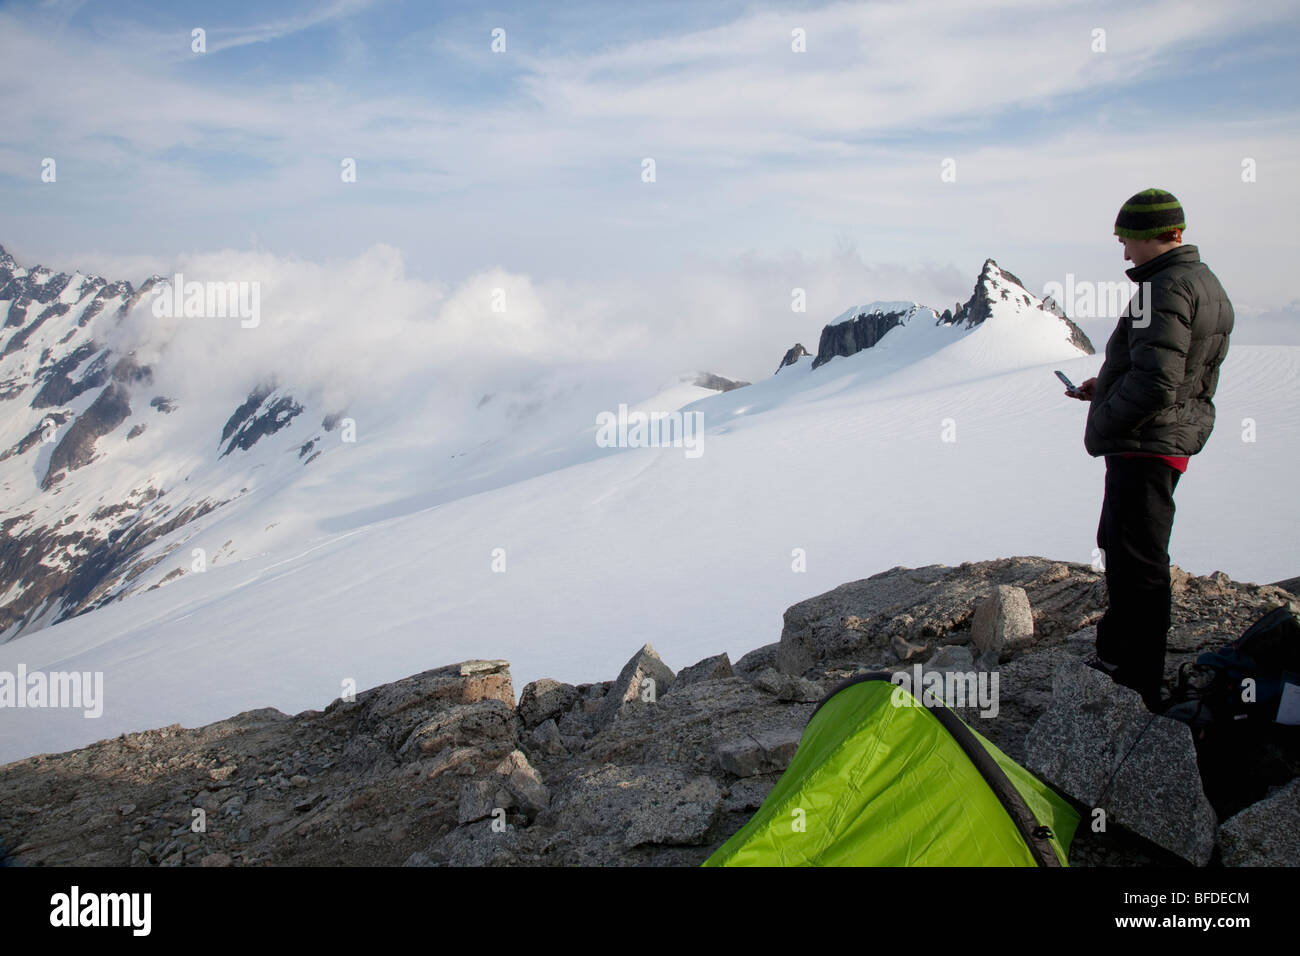 Jeune grimpeur vérifie son téléphone cellulaire pour la couverture tout en se tenant sur un affleurement rocheux sur un glacier avec des angles prononcés dans la distance Banque D'Images